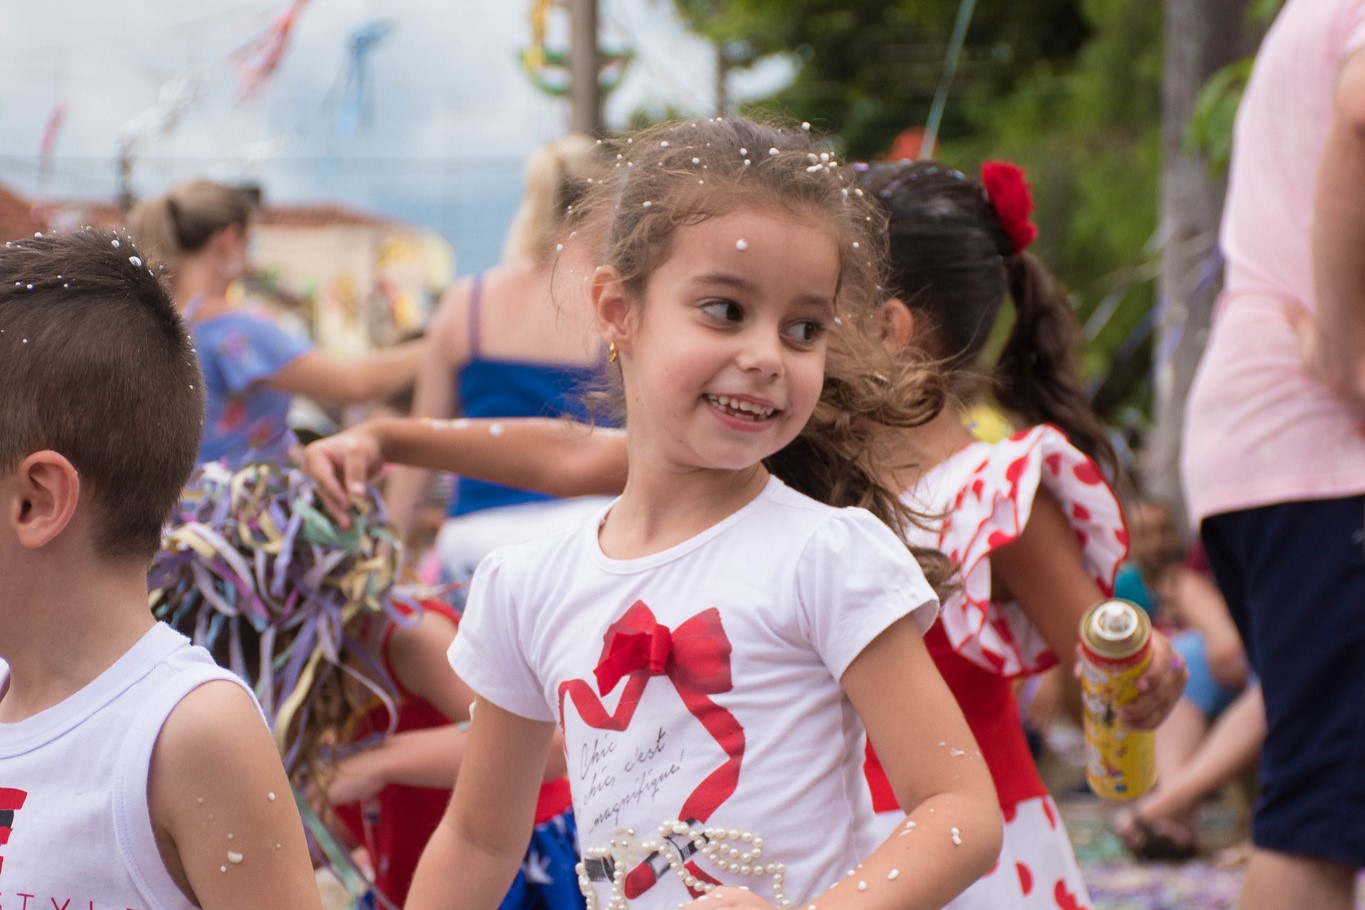 Criança se diverte no Carnaval de Urupês. Foto: Luís Fernando da Silva / Prefeitura Municipal de Urupês.